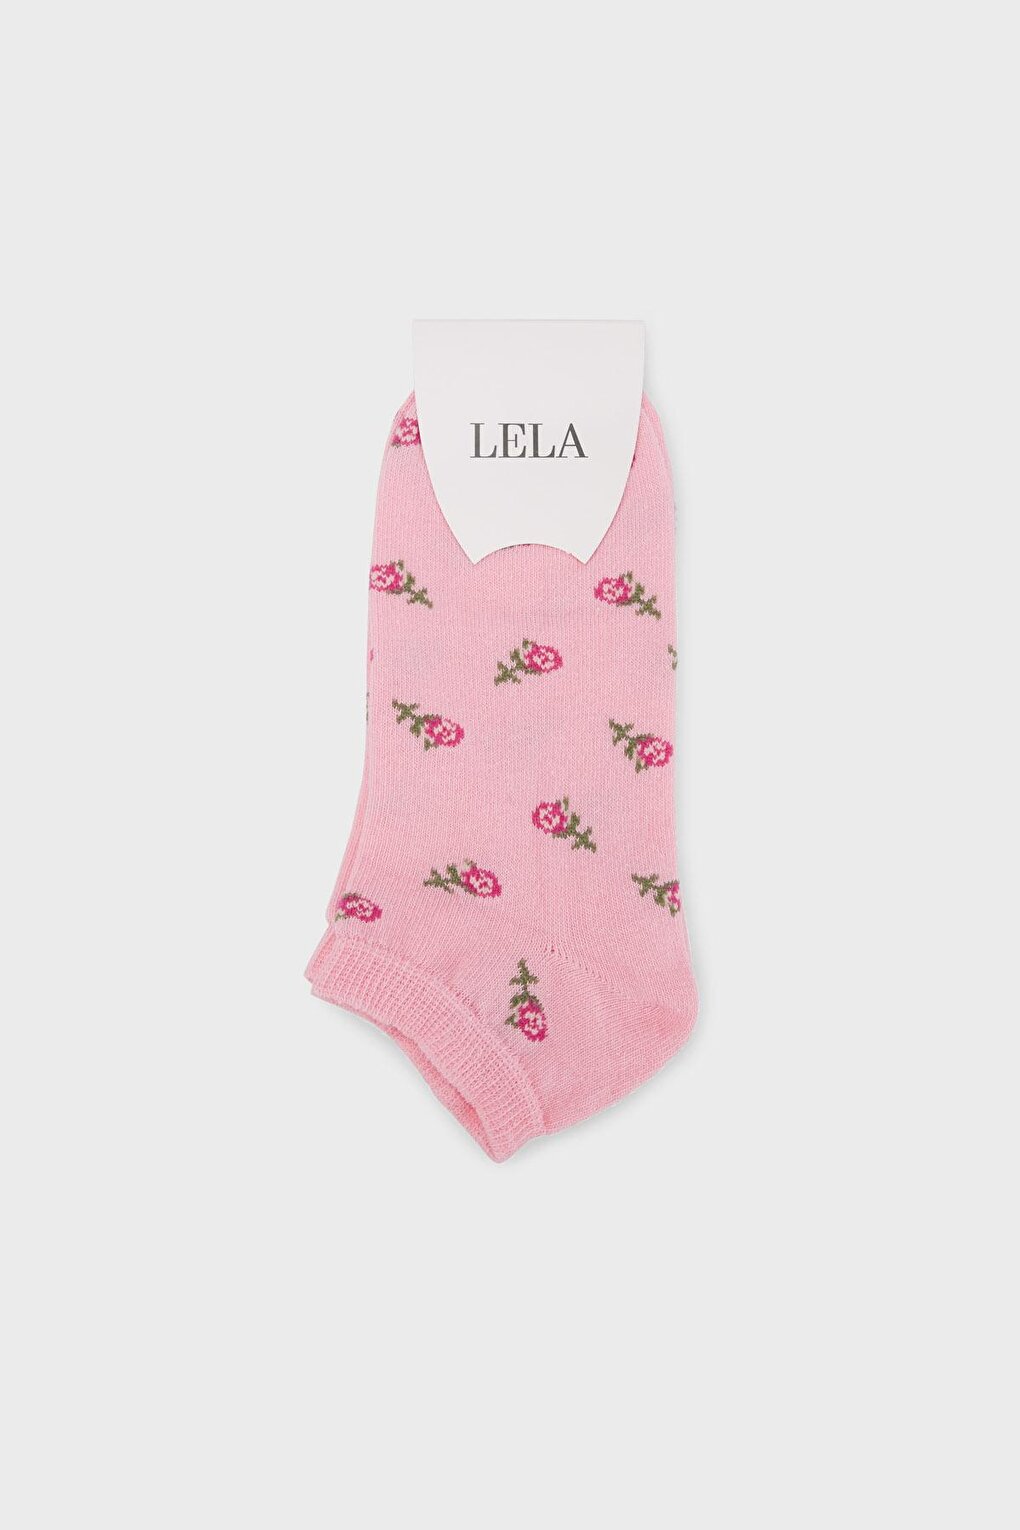 Мягкие хлопковые вязаные носки с рисунком 0070003 Lela, розовый 1 пара мягкие хлопковые носки для новорожденных с рисунком животных